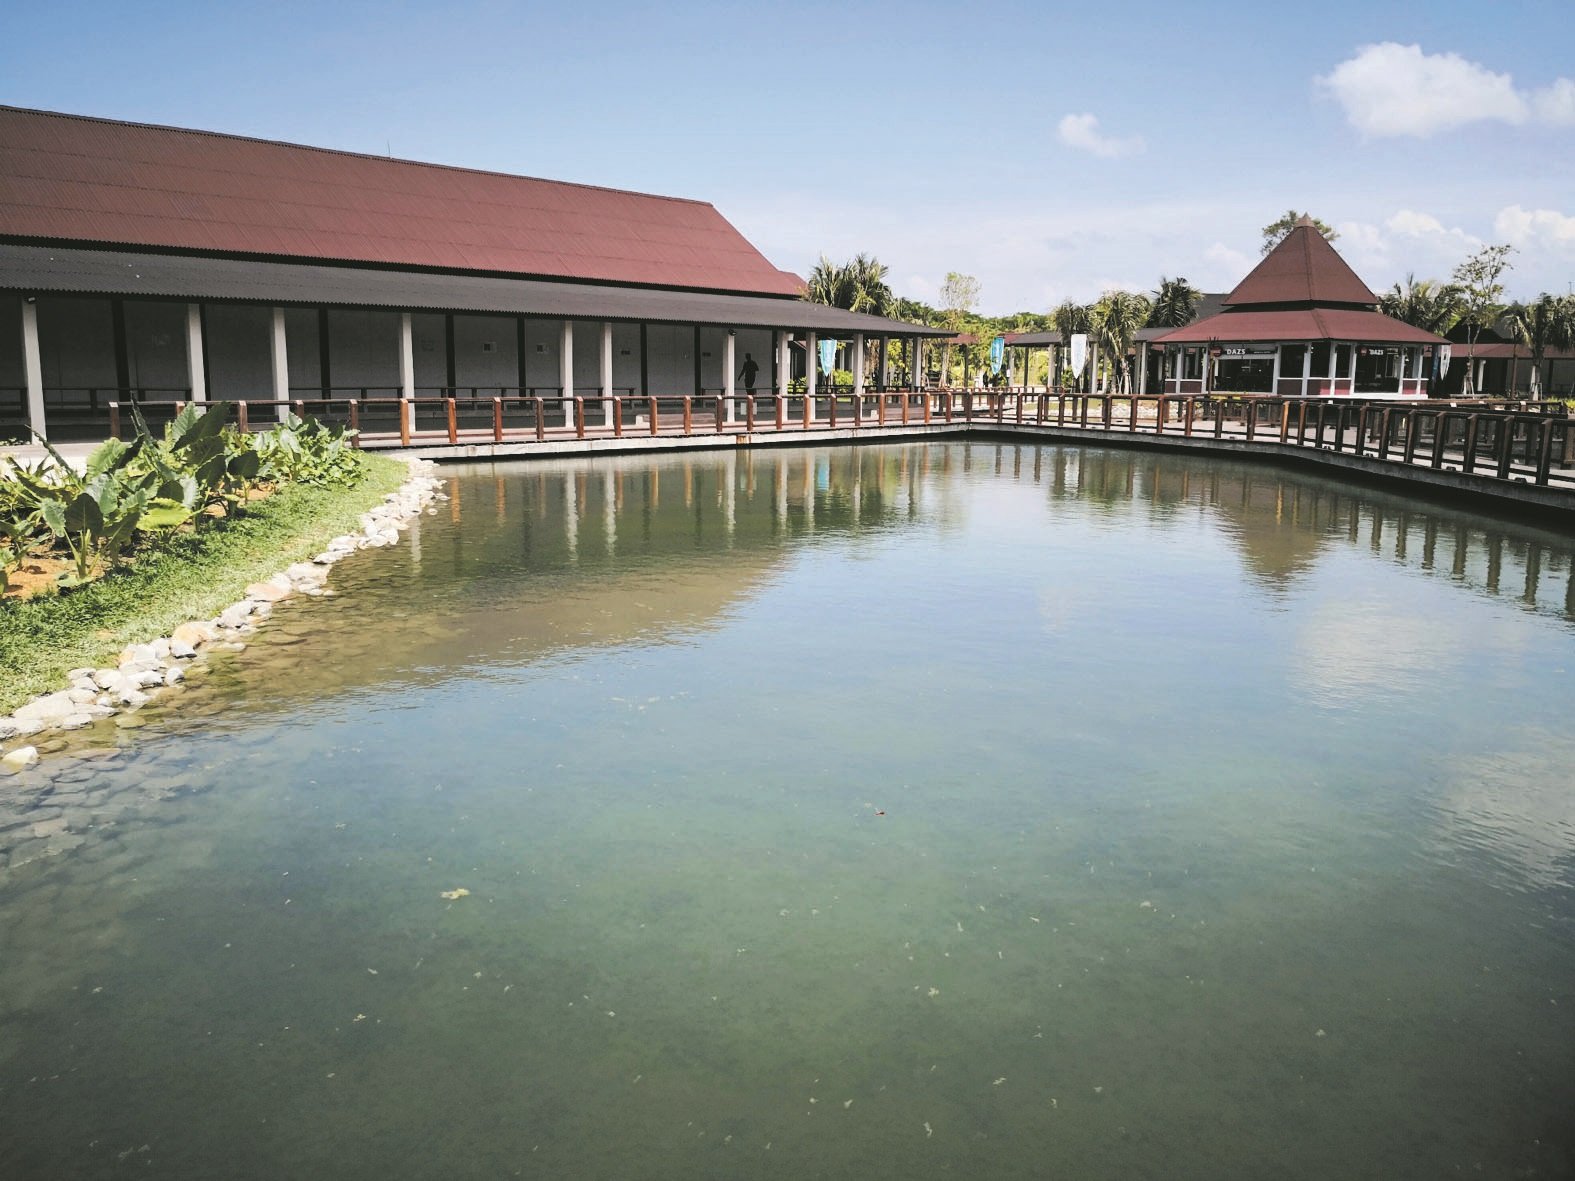 迪沙鲁海岸综合休闲度假区提供多元的旅游选项，在探险水上主题乐园旁设立河畔商店饮食街。